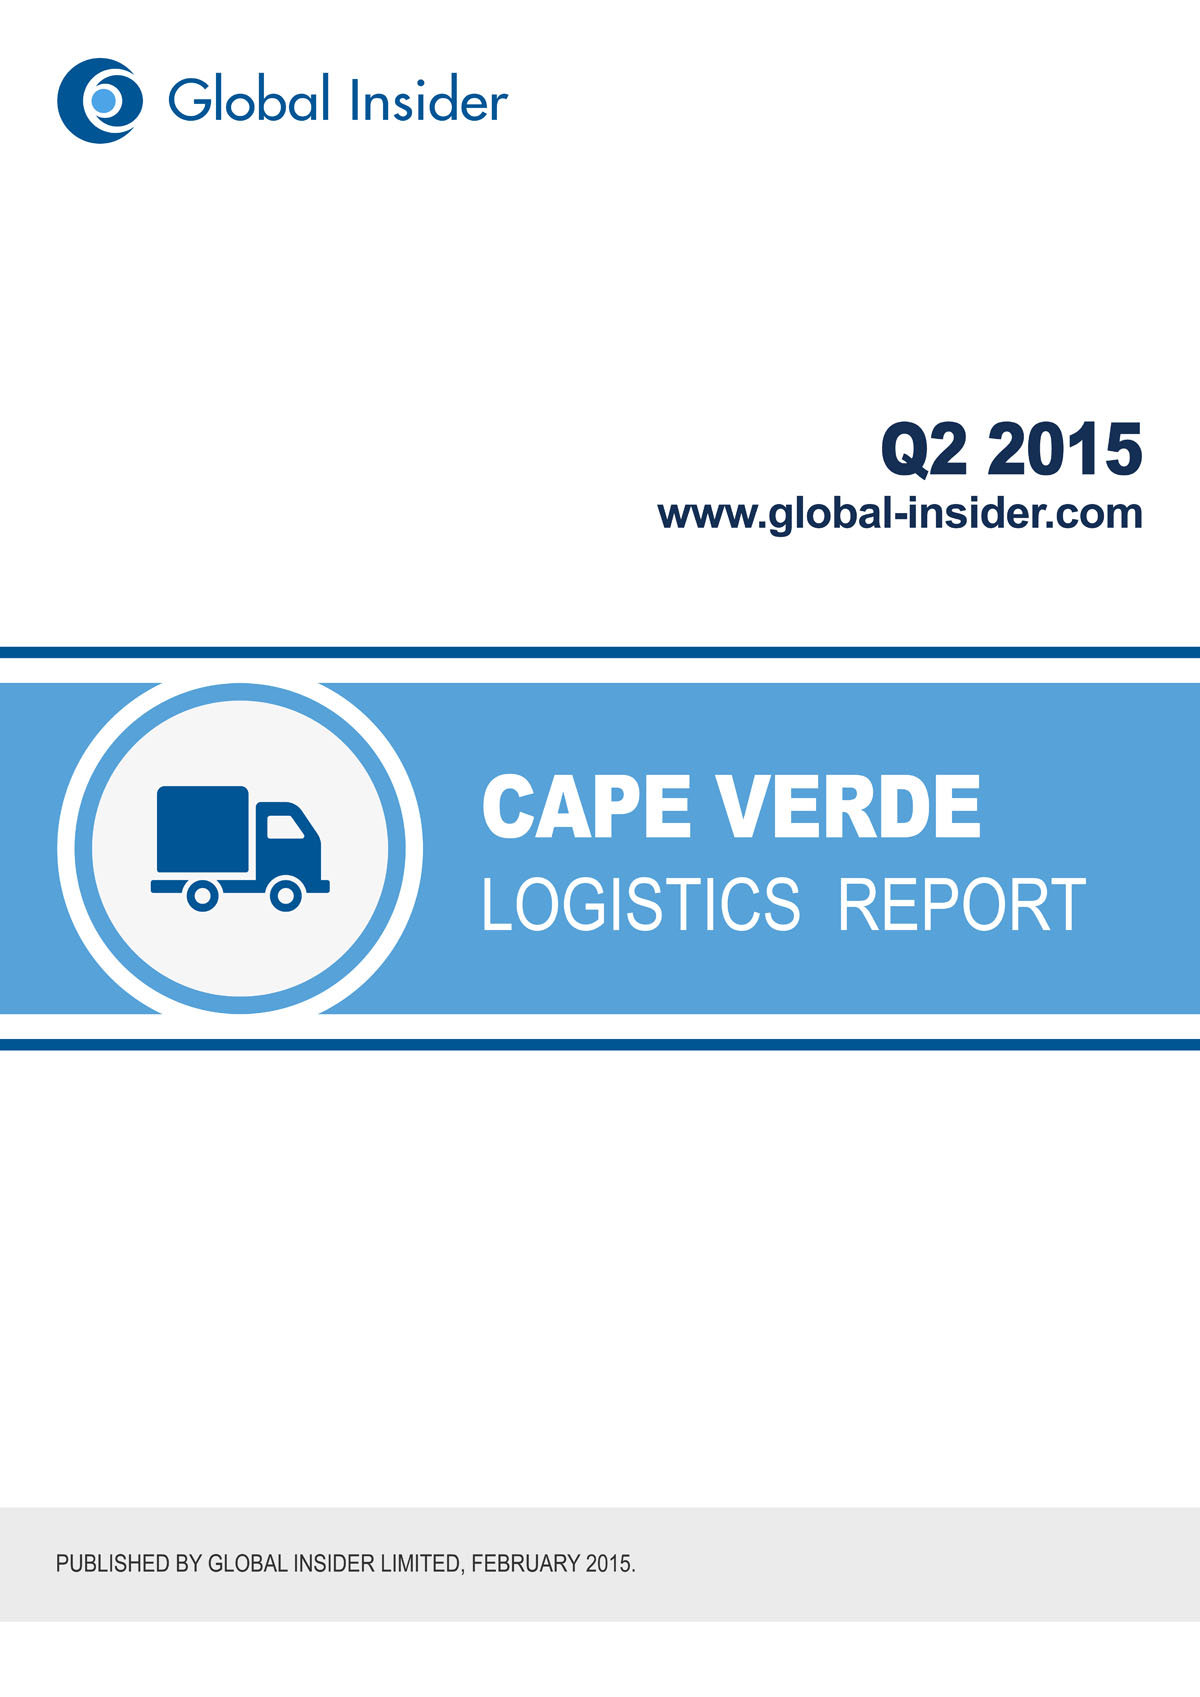 Cape Verde Logistics Report